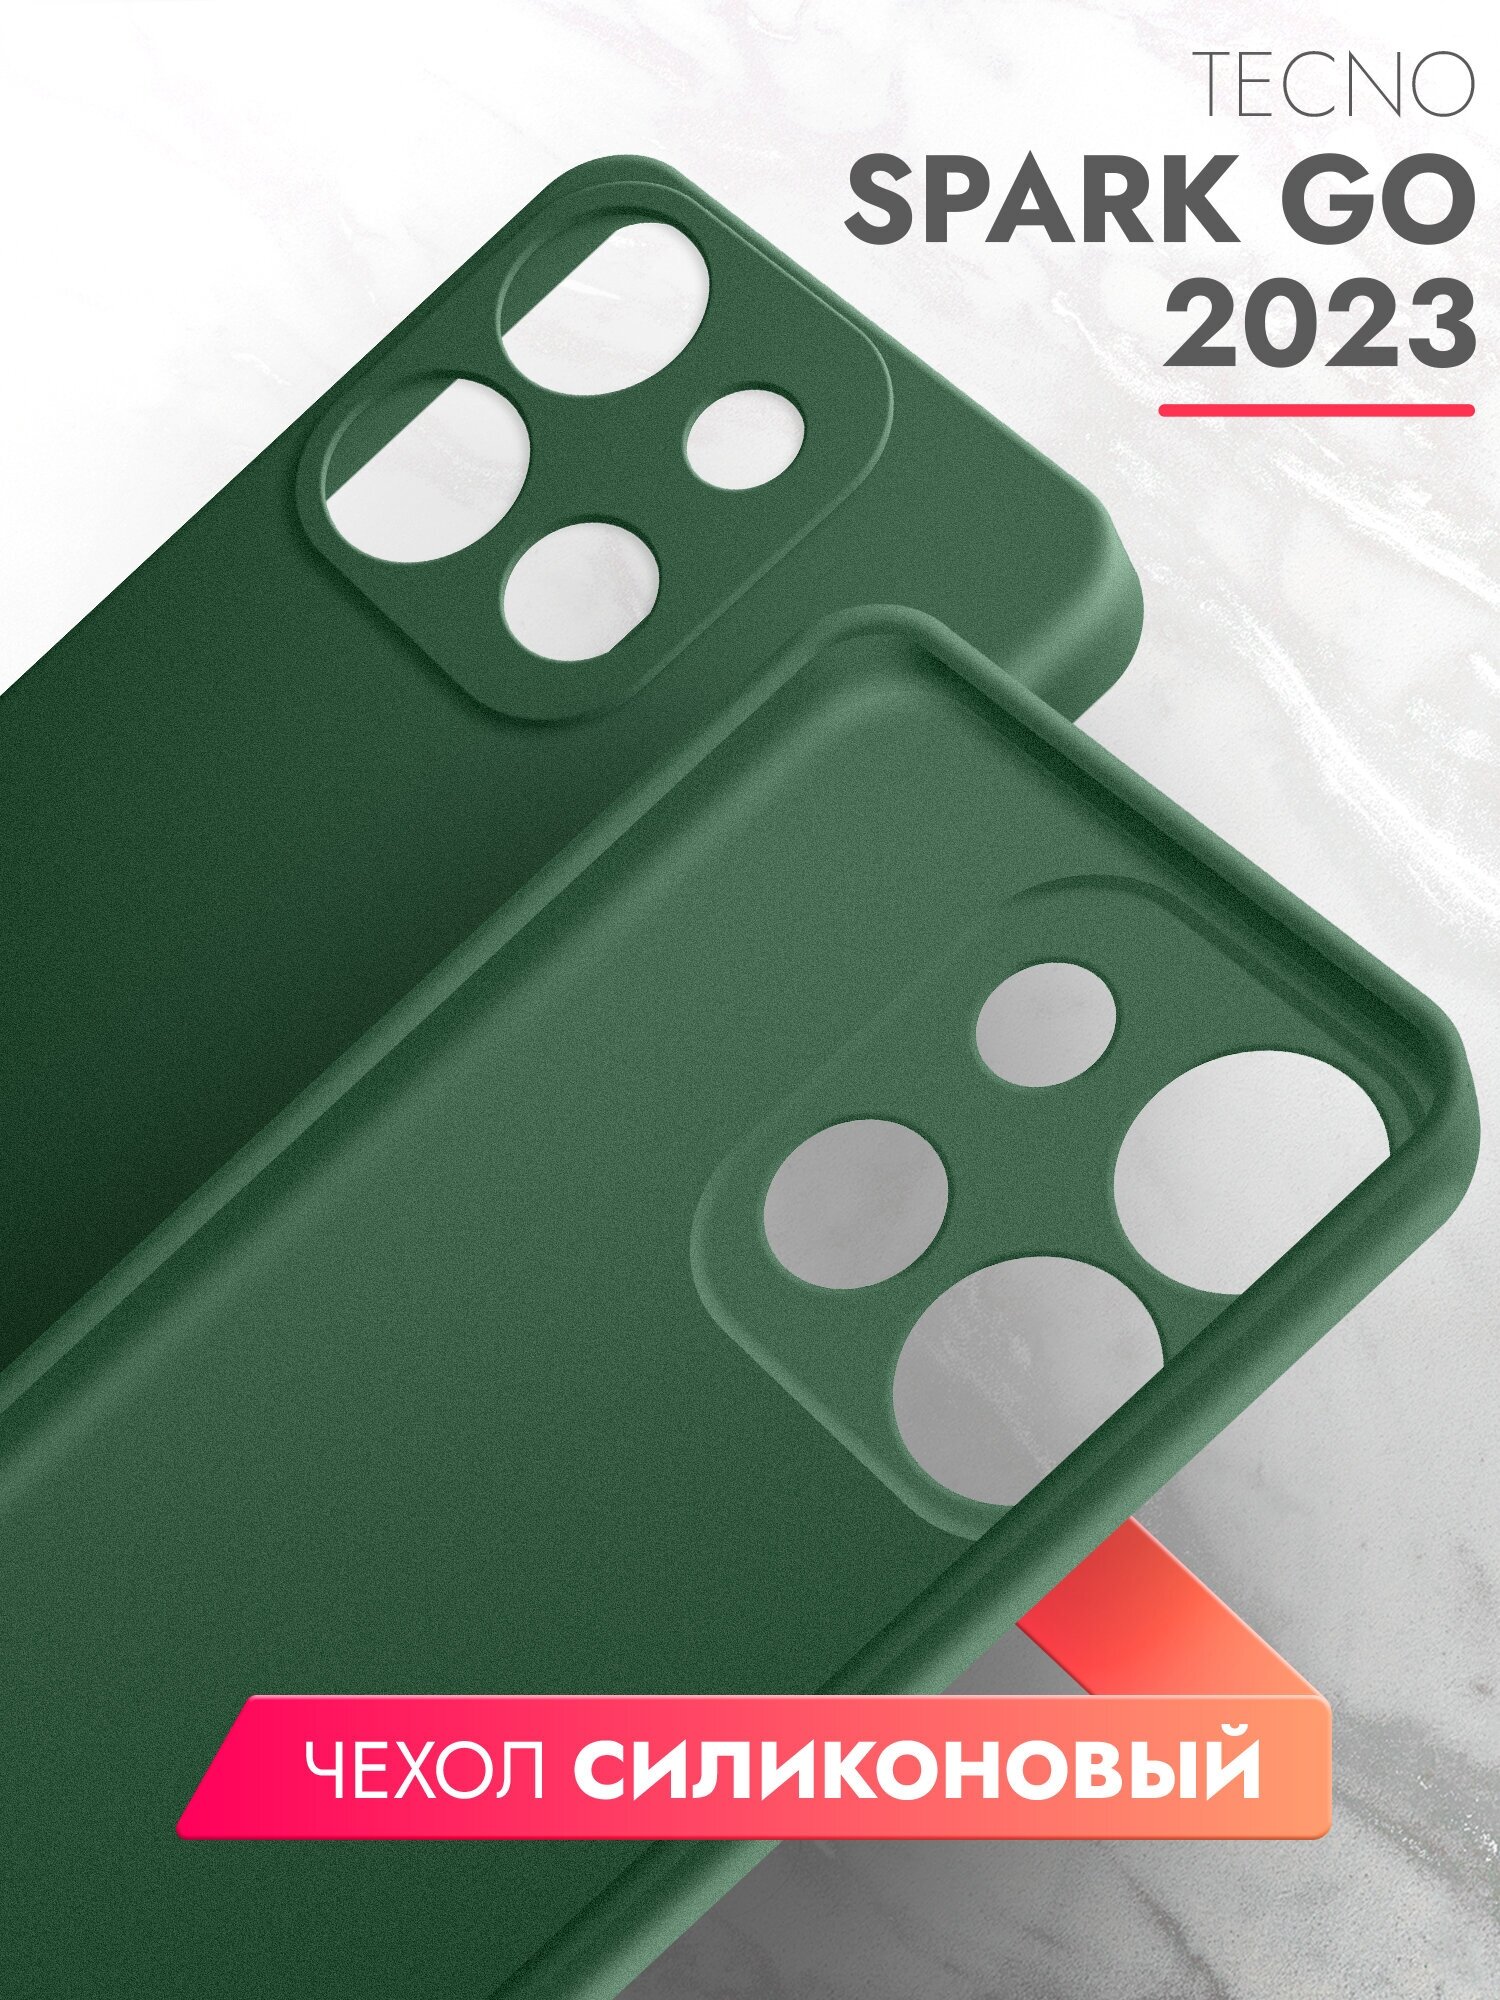 Чехол на Infinix Smart 7/Tecno Spark Go 2023/Pop 7/7 pro (Инфиникс Смарт 7; Техно Спарк Гоу 2023; Поп 7/7 про) зеленый опал матовый силиконовый, Brozo